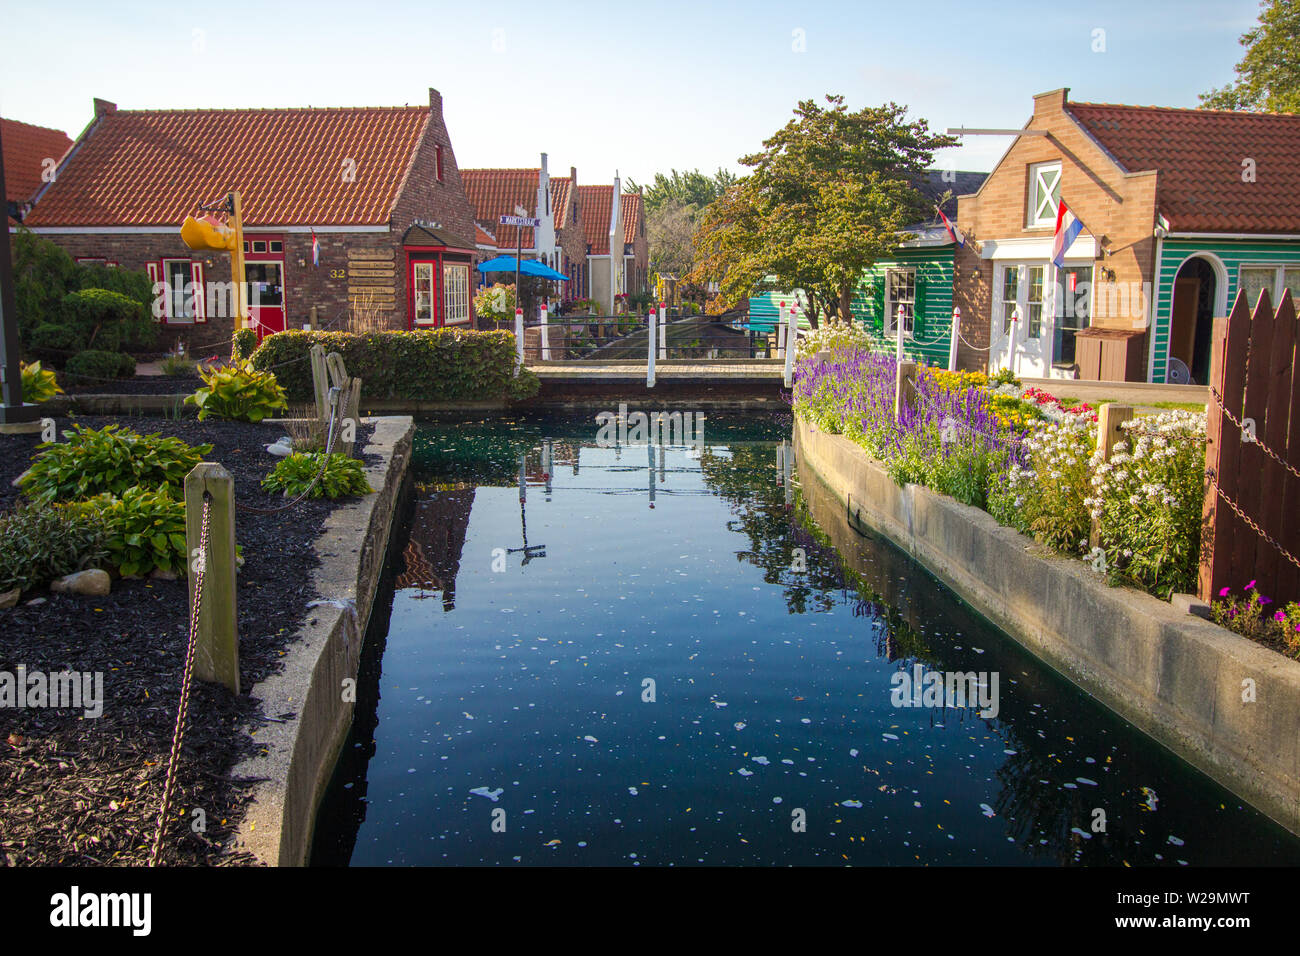 Holland, Michigan, États-Unis - 18 septembre 2018 : Nelis Dutch Village Scène de rue avec canal. Le village dispose d'une boutique, manèges et attractions. Banque D'Images